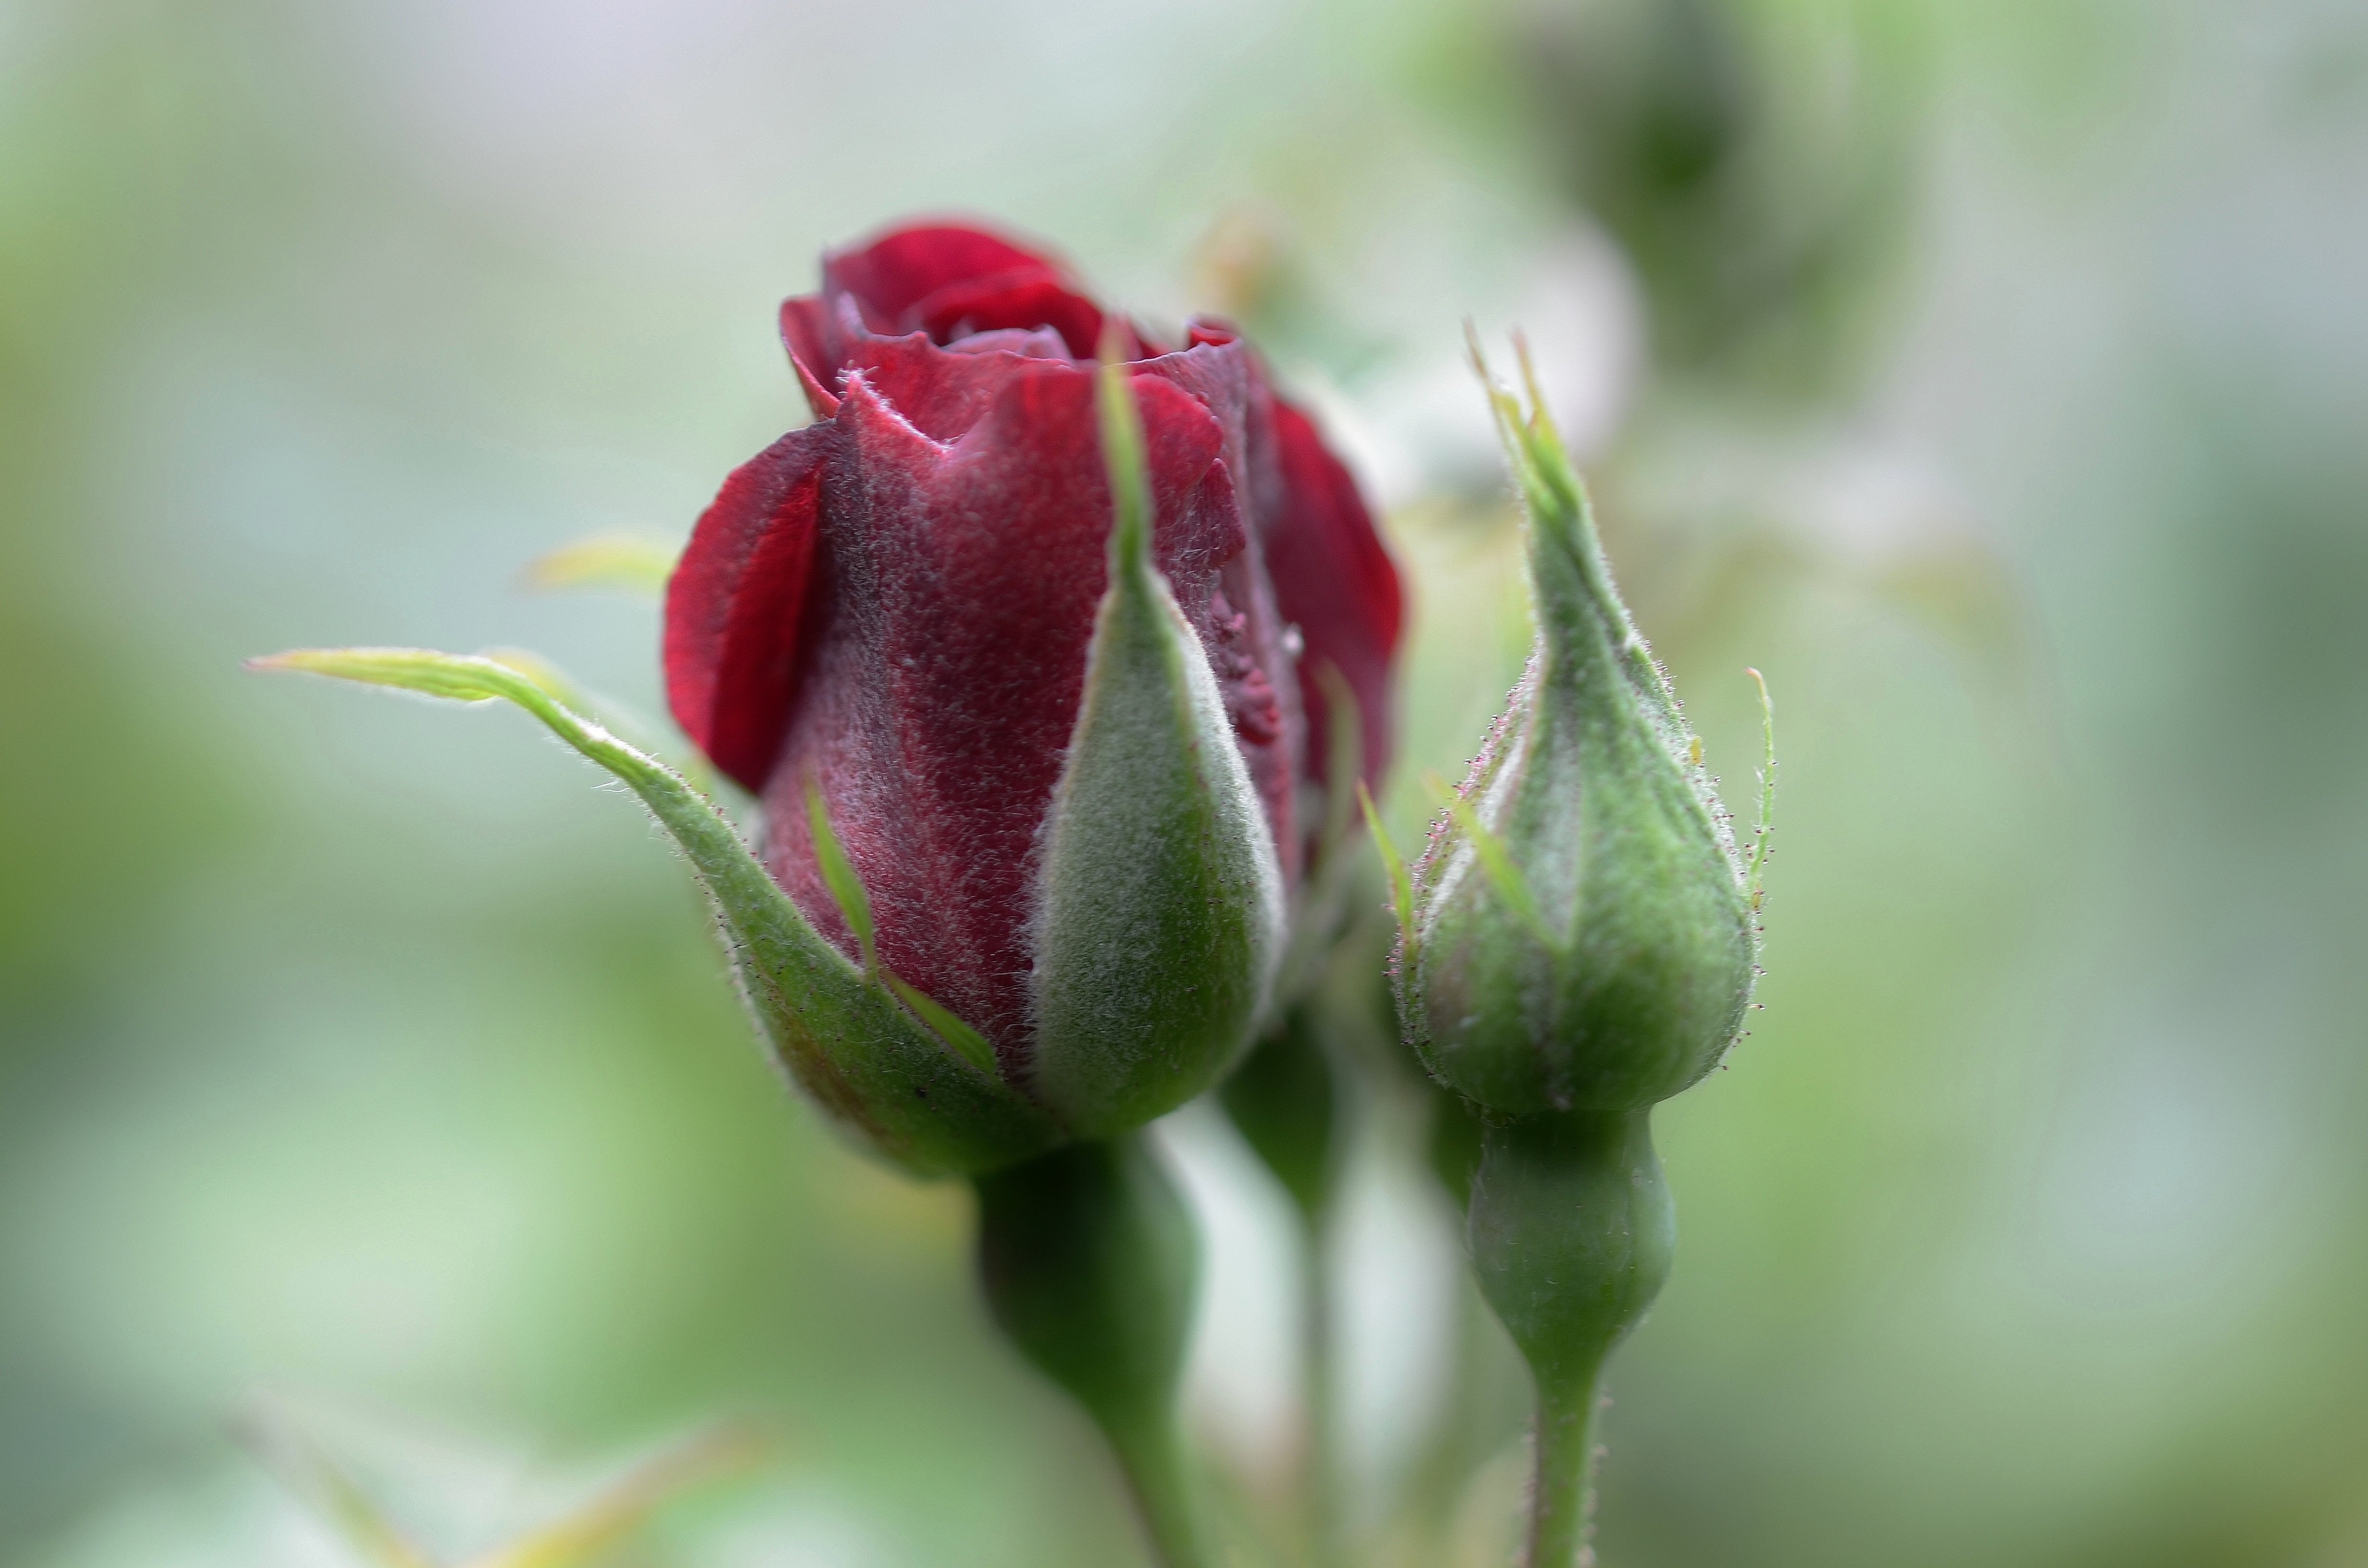 Красные бутоны главные герои. Чашелистик розы. Бутон цветка. Бутон розы. Красивые бутоны роз.